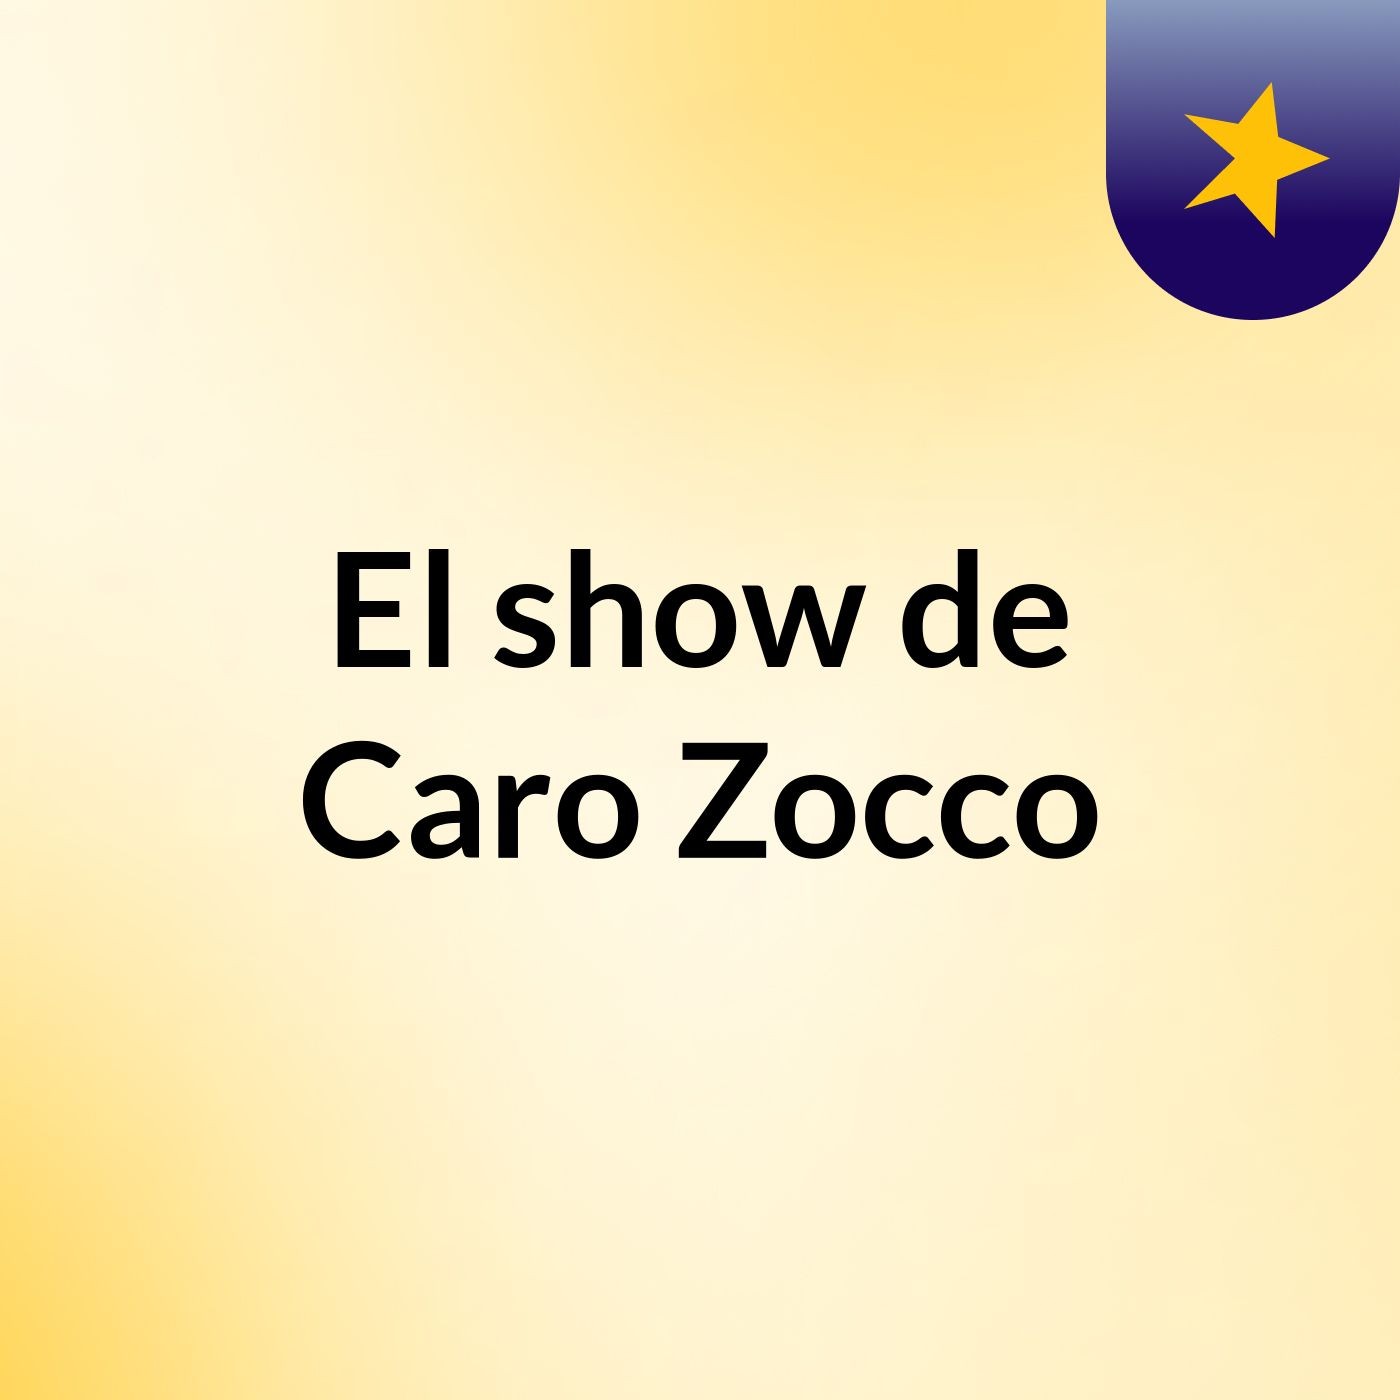 El show de Caro Zocco